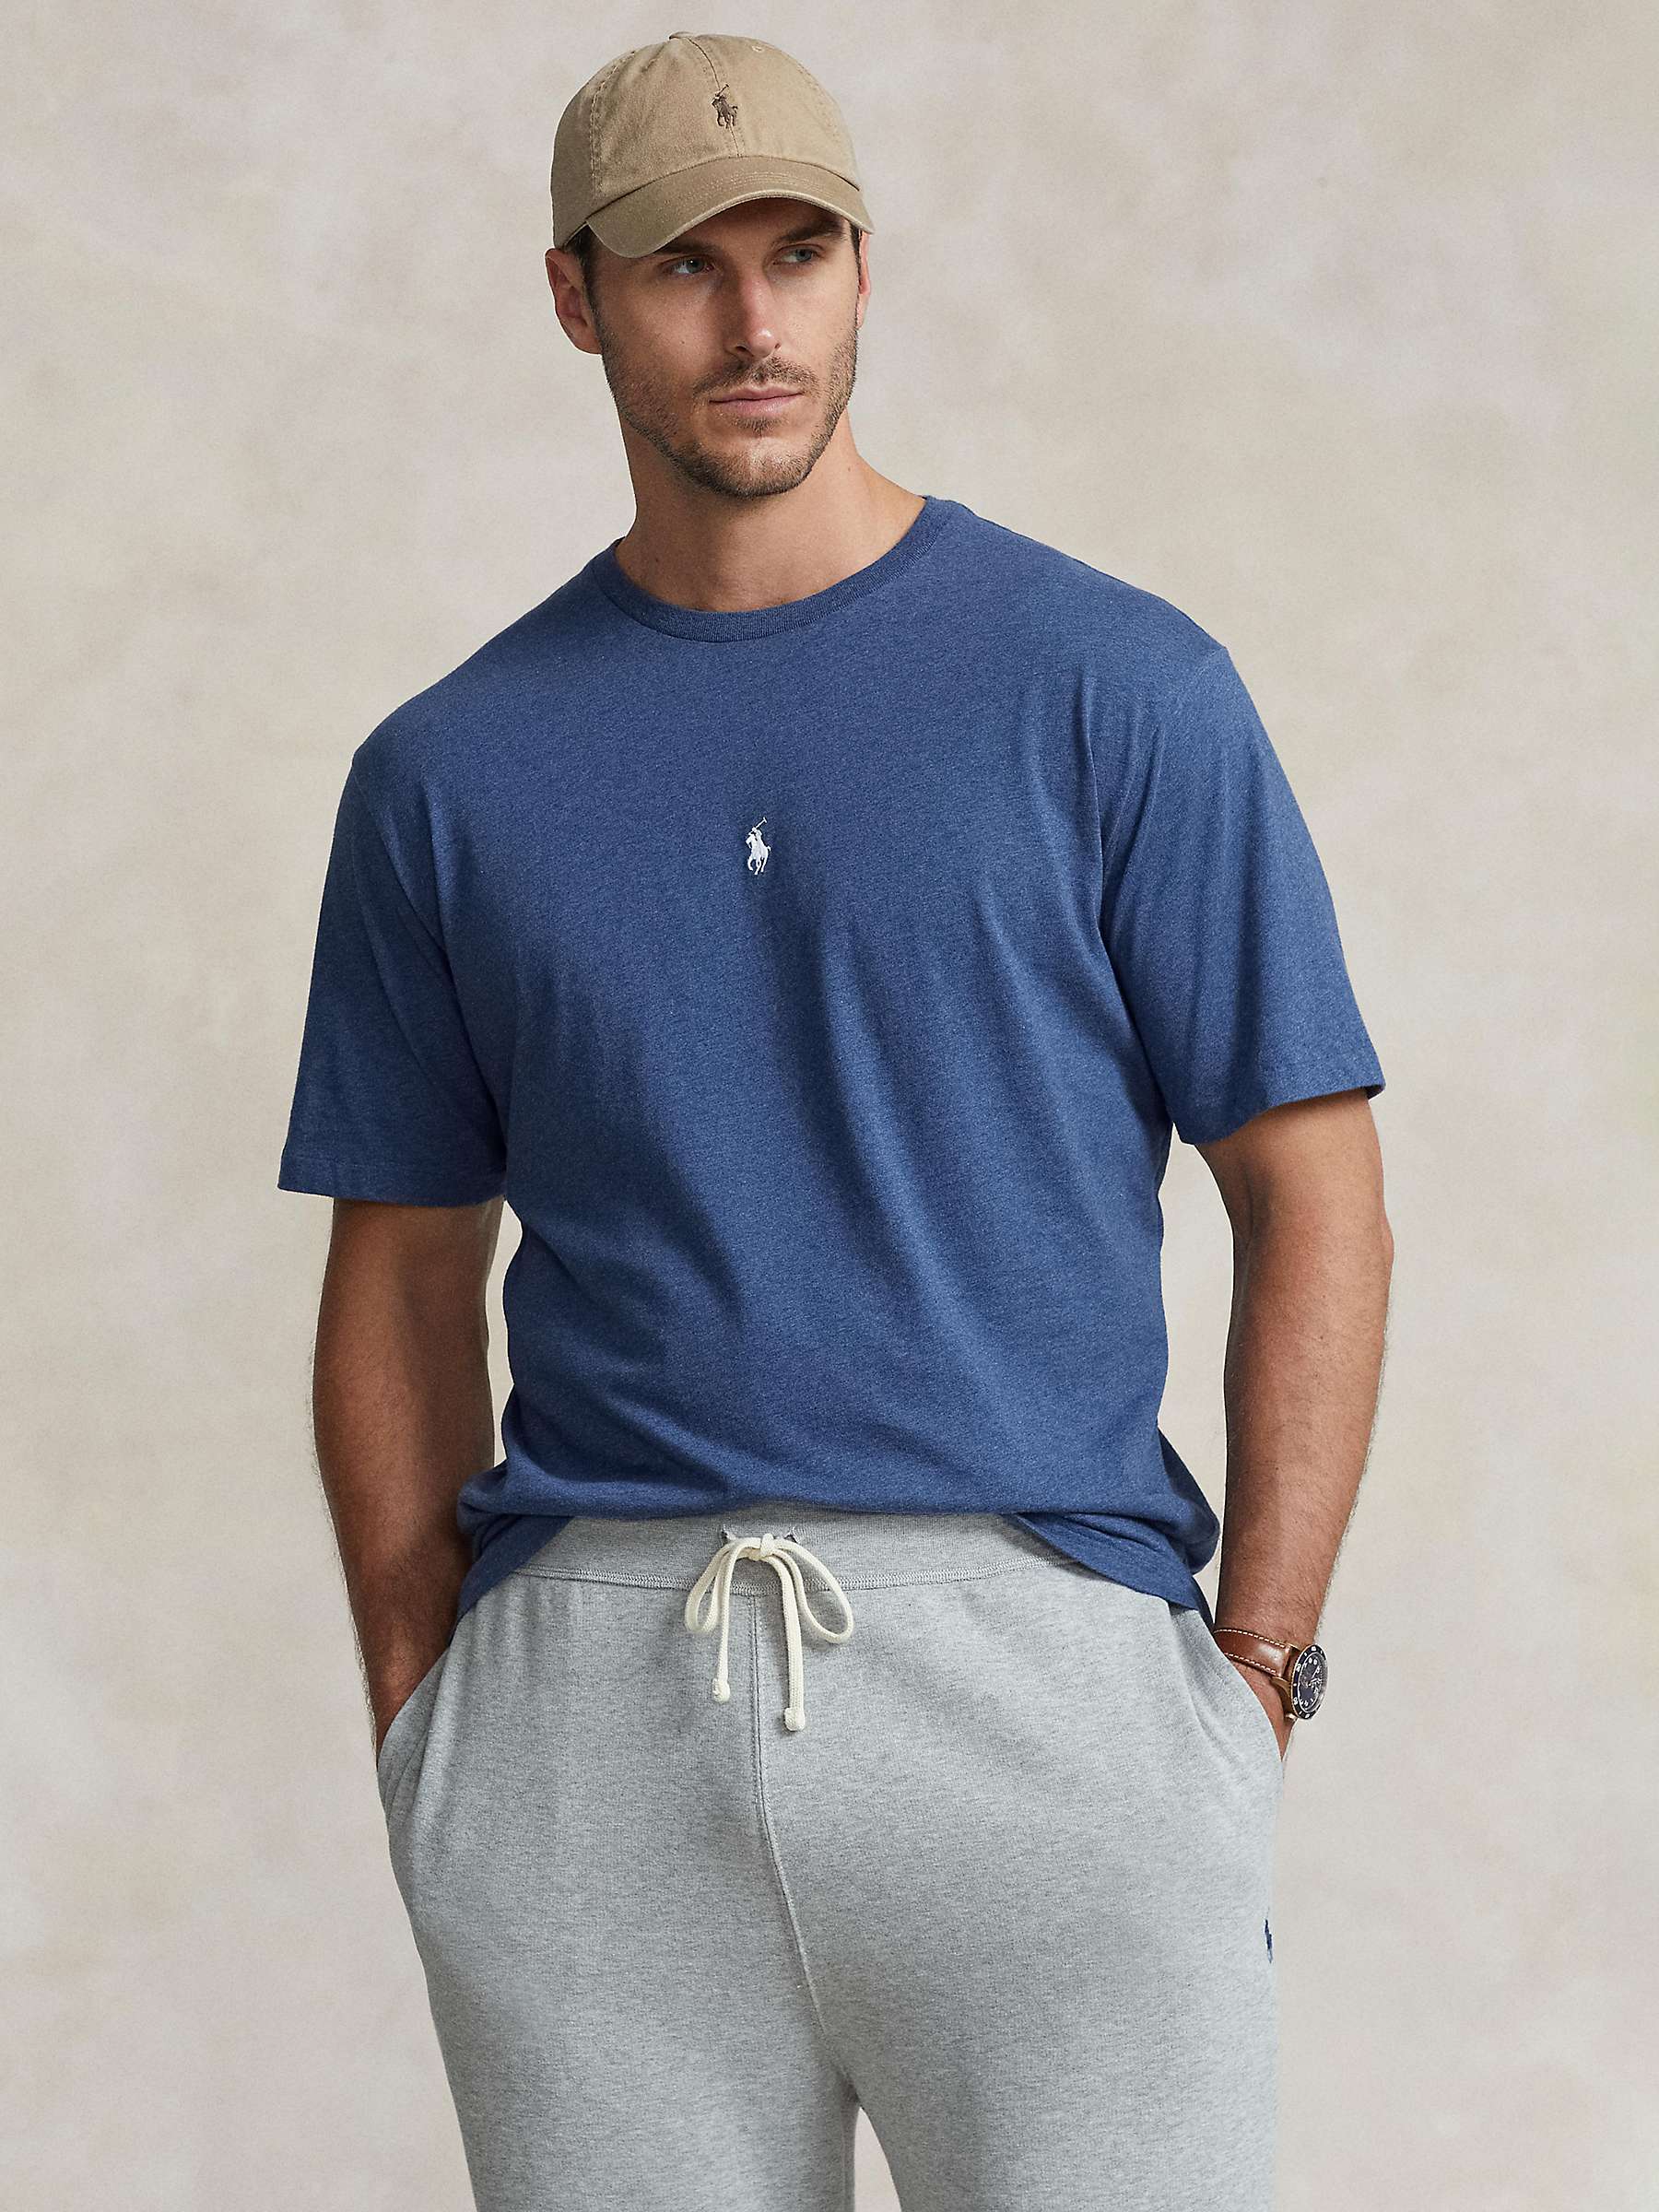 Buy Polo Ralph Lauren Big & Tall Cotton T-Shirt Online at johnlewis.com